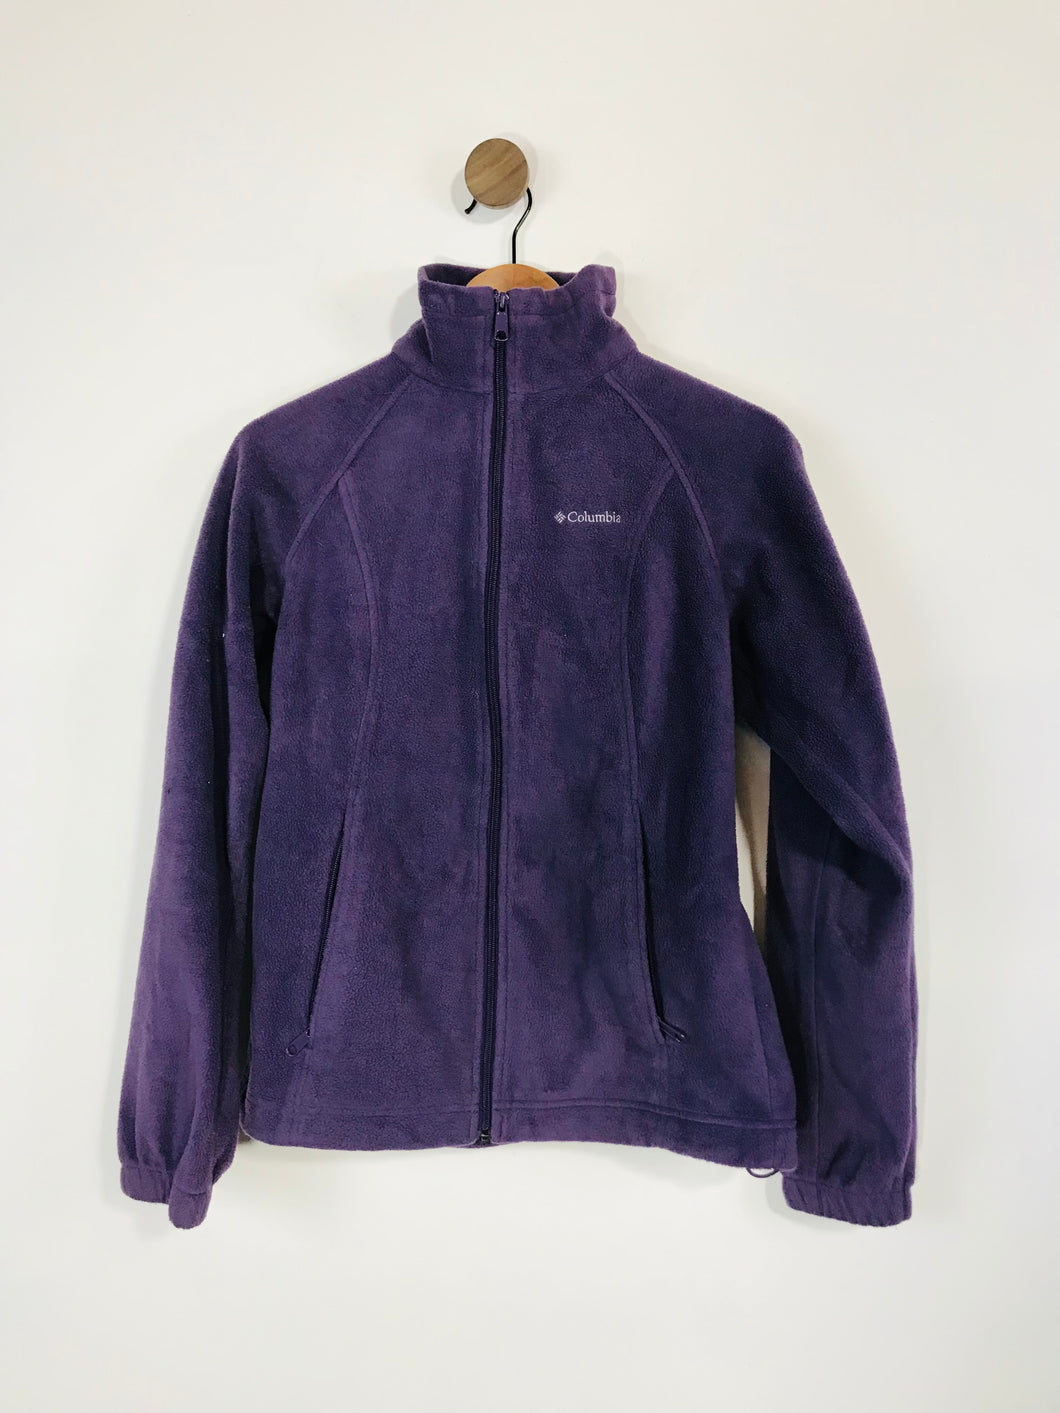 Columbia Women's Fleece Jacket | S UK8 | Purple